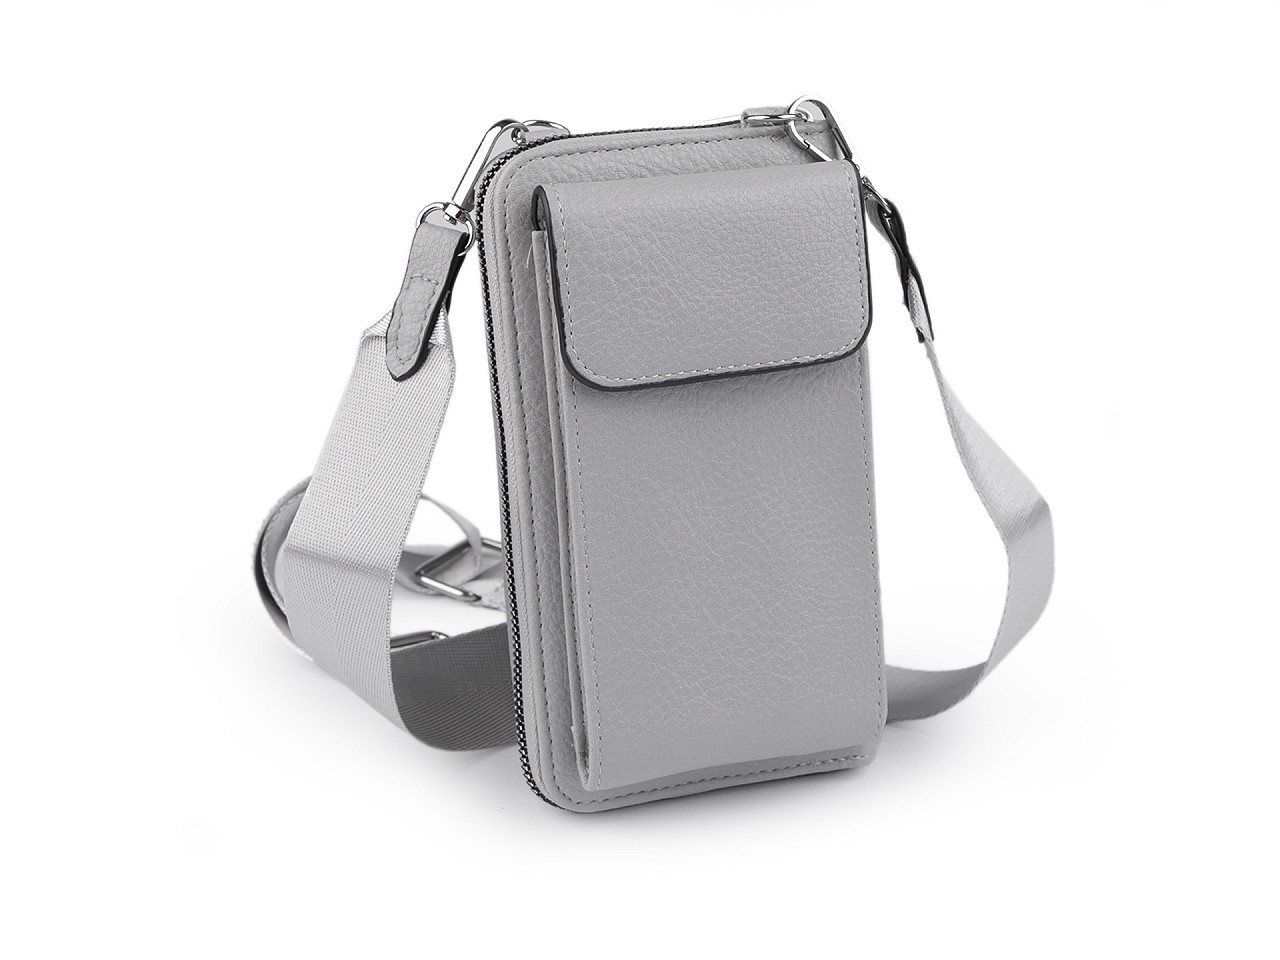 Peněženka s kapsou na mobil přes rameno crossbody s klíčenkou 11x19 cm, barva 4 šedá světlá